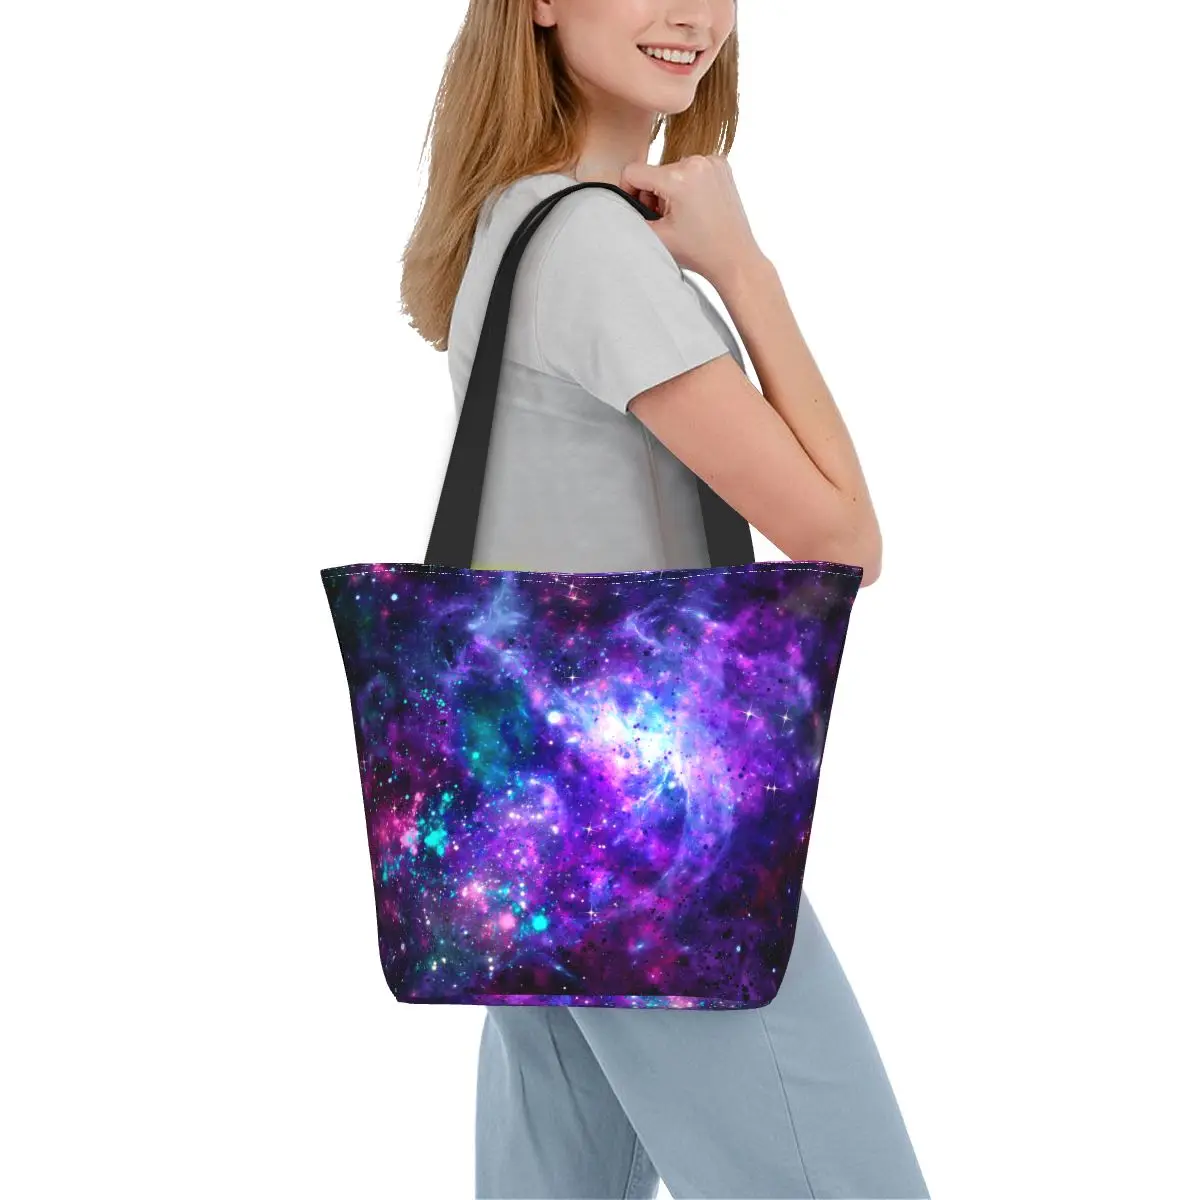 

Сумка-шоппер с космическим принтом, винтажные дамские сумочки в стиле Фэнтези и галактики, тканевая рабочая сумка-тоут, женские сумки для покупок с принтом